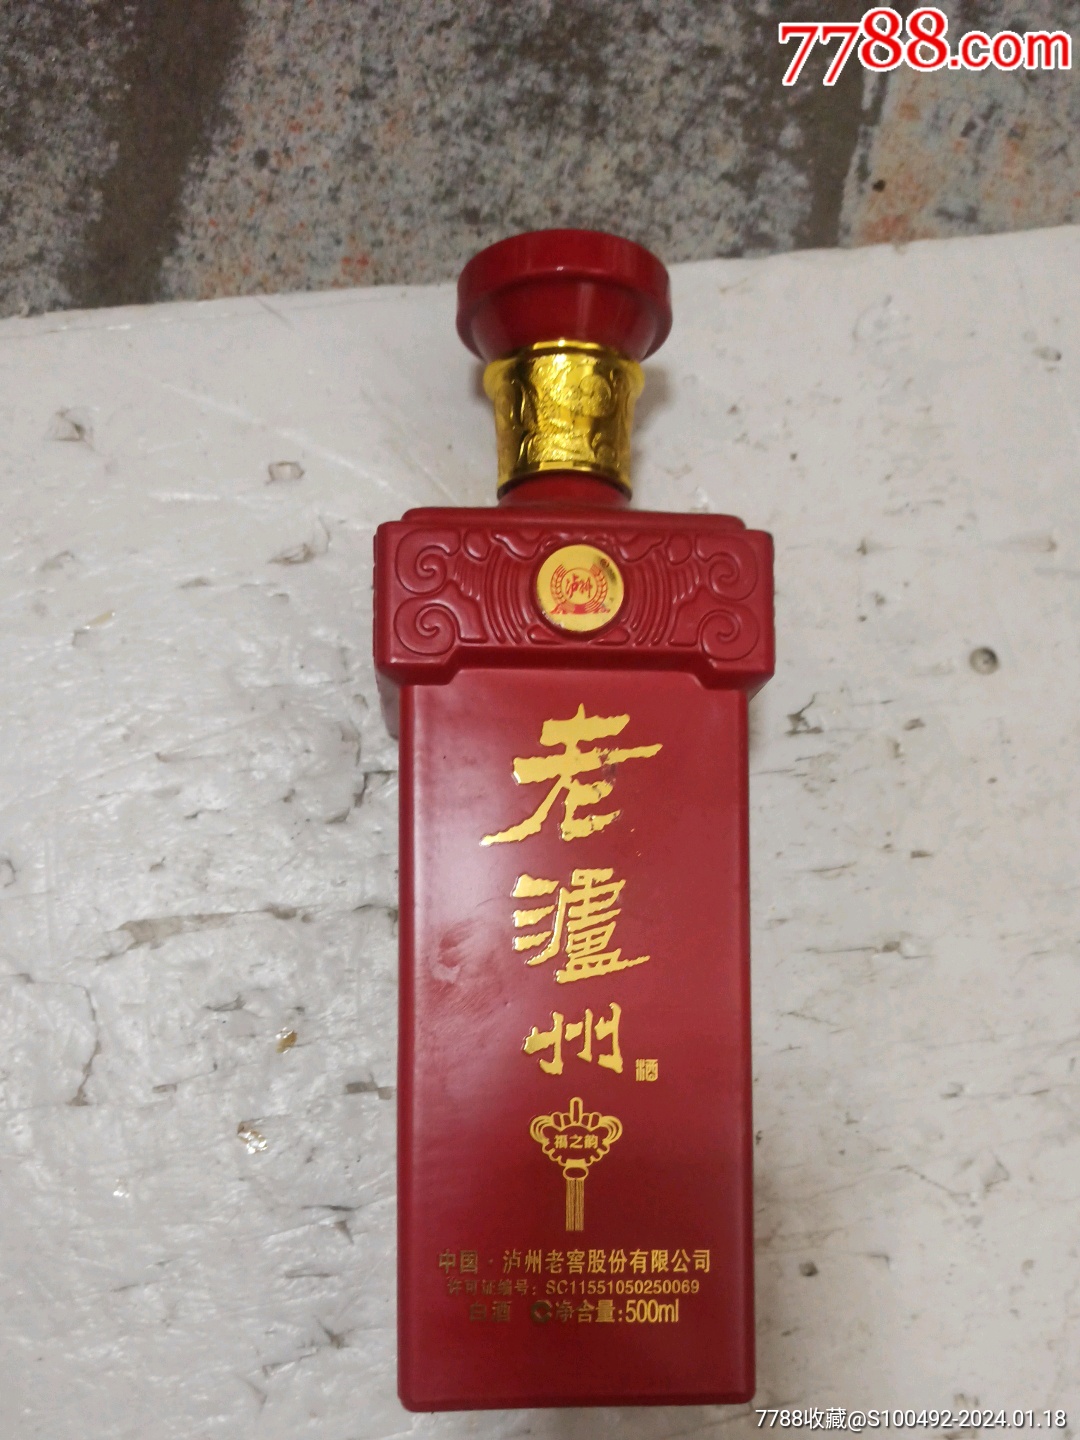 老泸州酒52度精品9红色图片